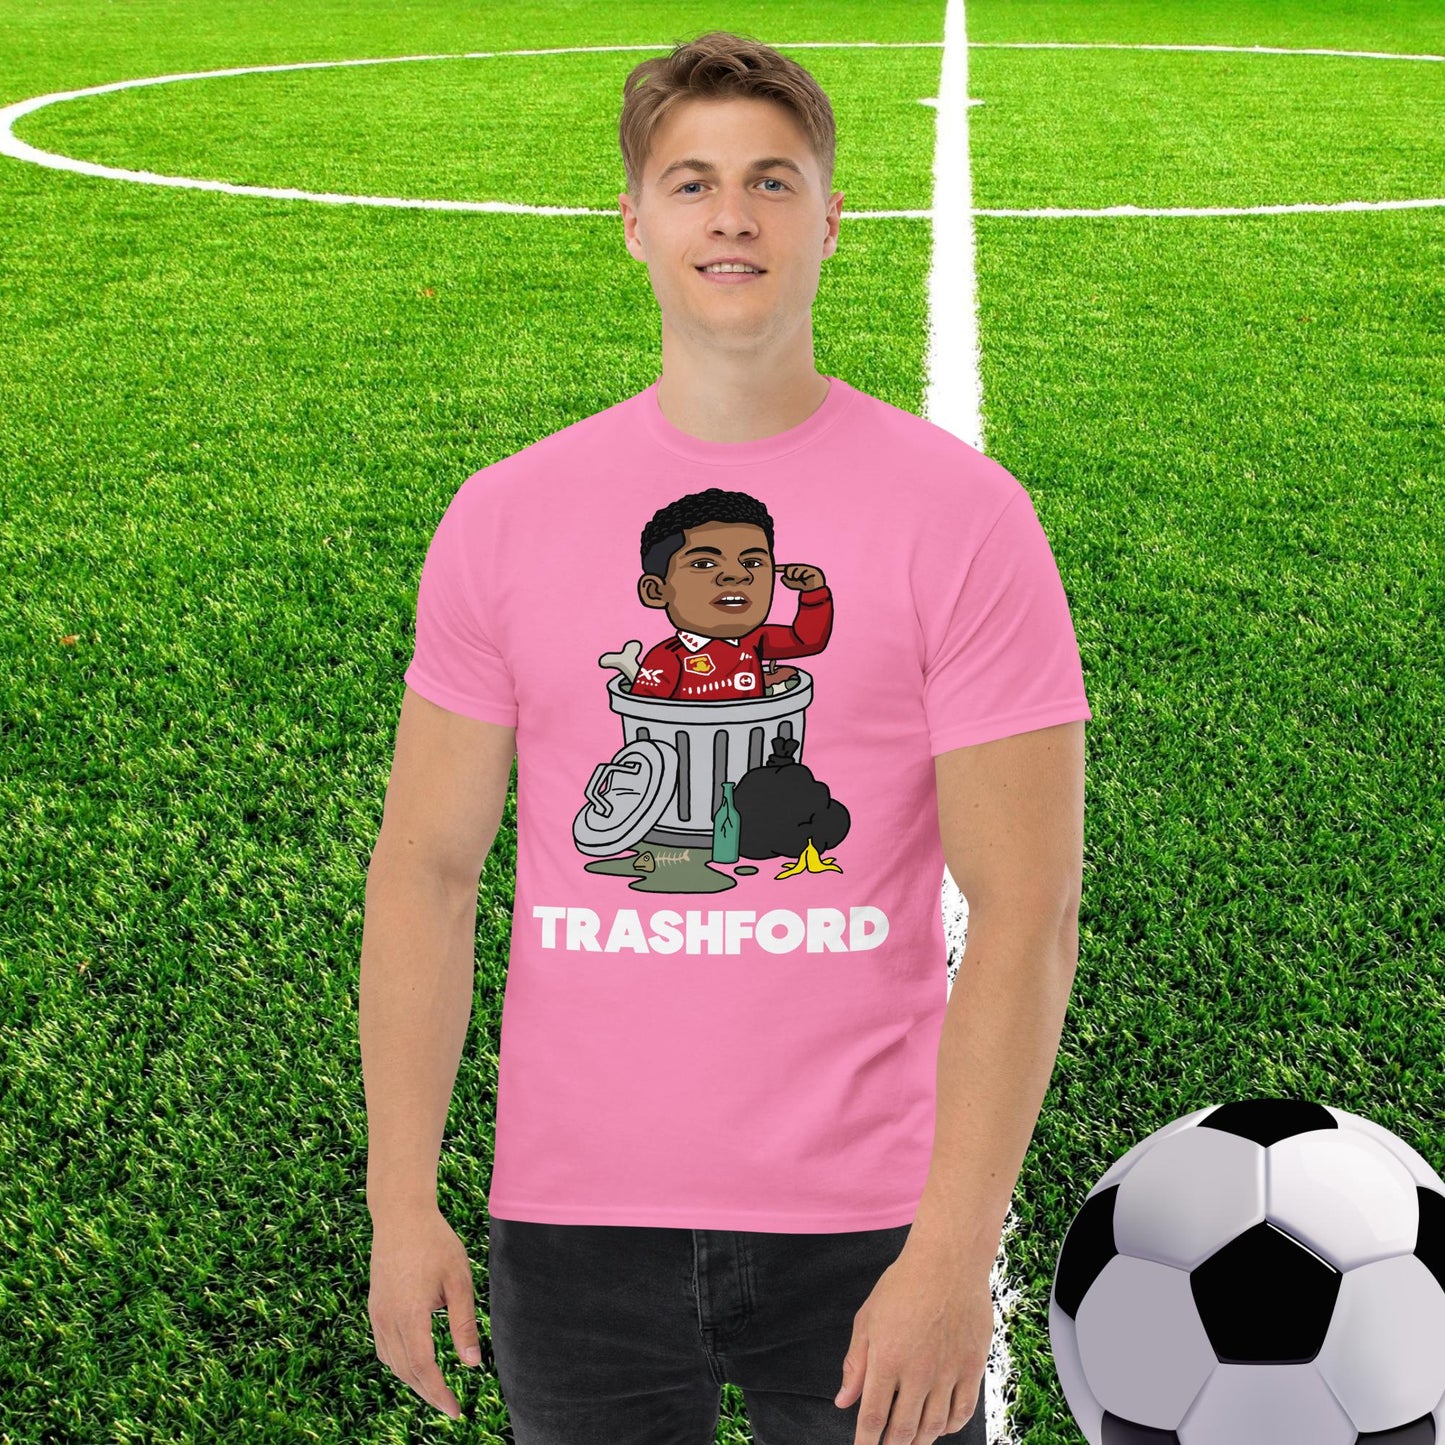 Trashford Marcus Rashford Manchester United Gift Man United Gift Marcus Rashford tee Next Cult Brand